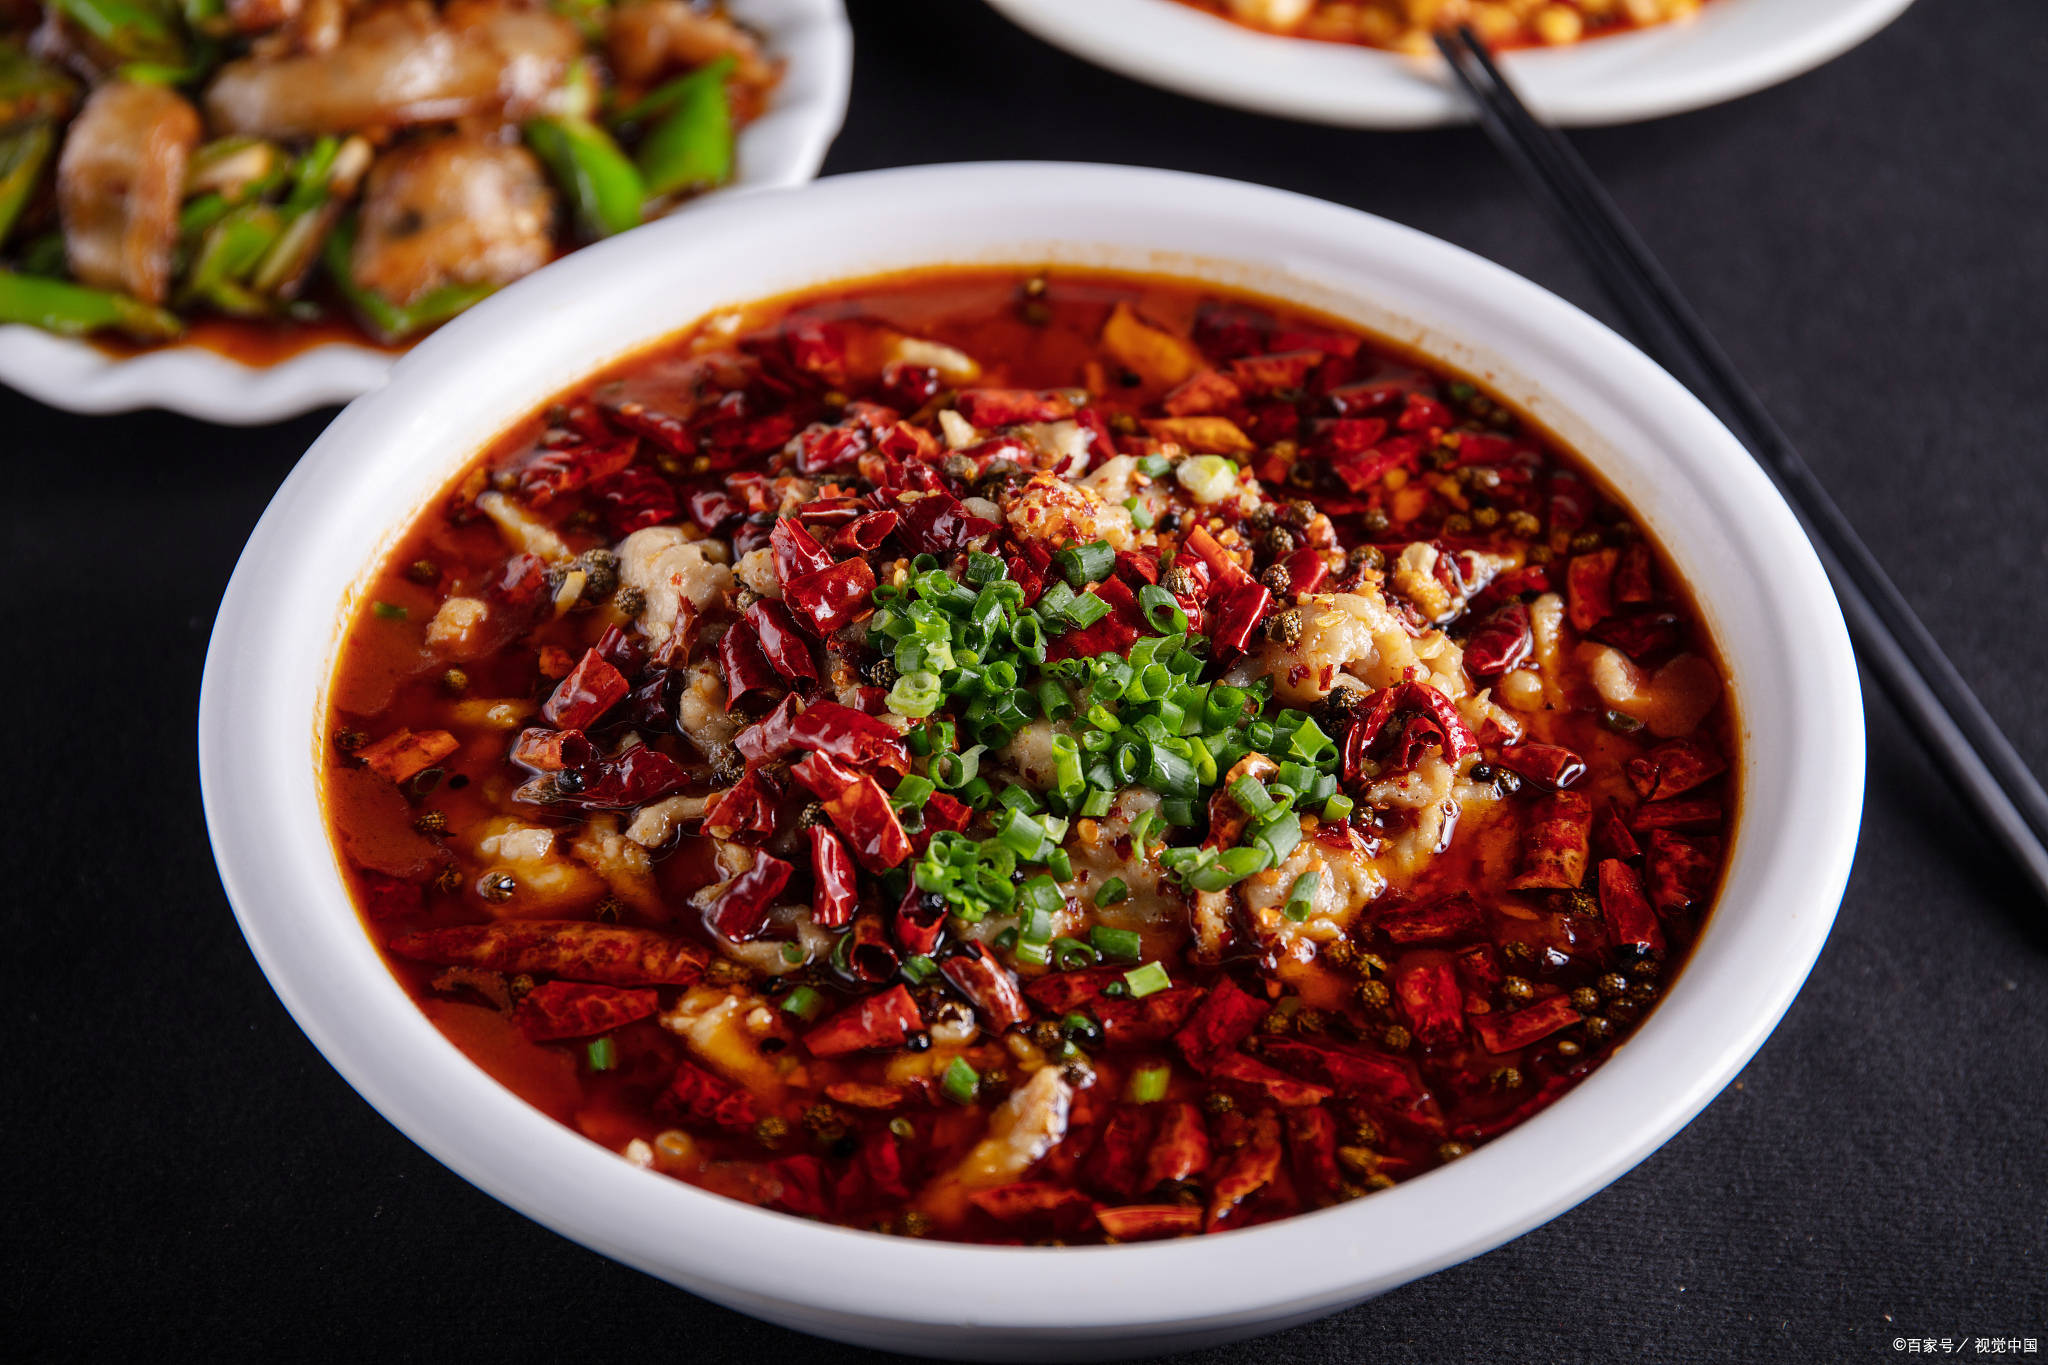 重庆的特色美食种类繁多,无论是地方小吃,特色菜肴还是传统名菜,都能